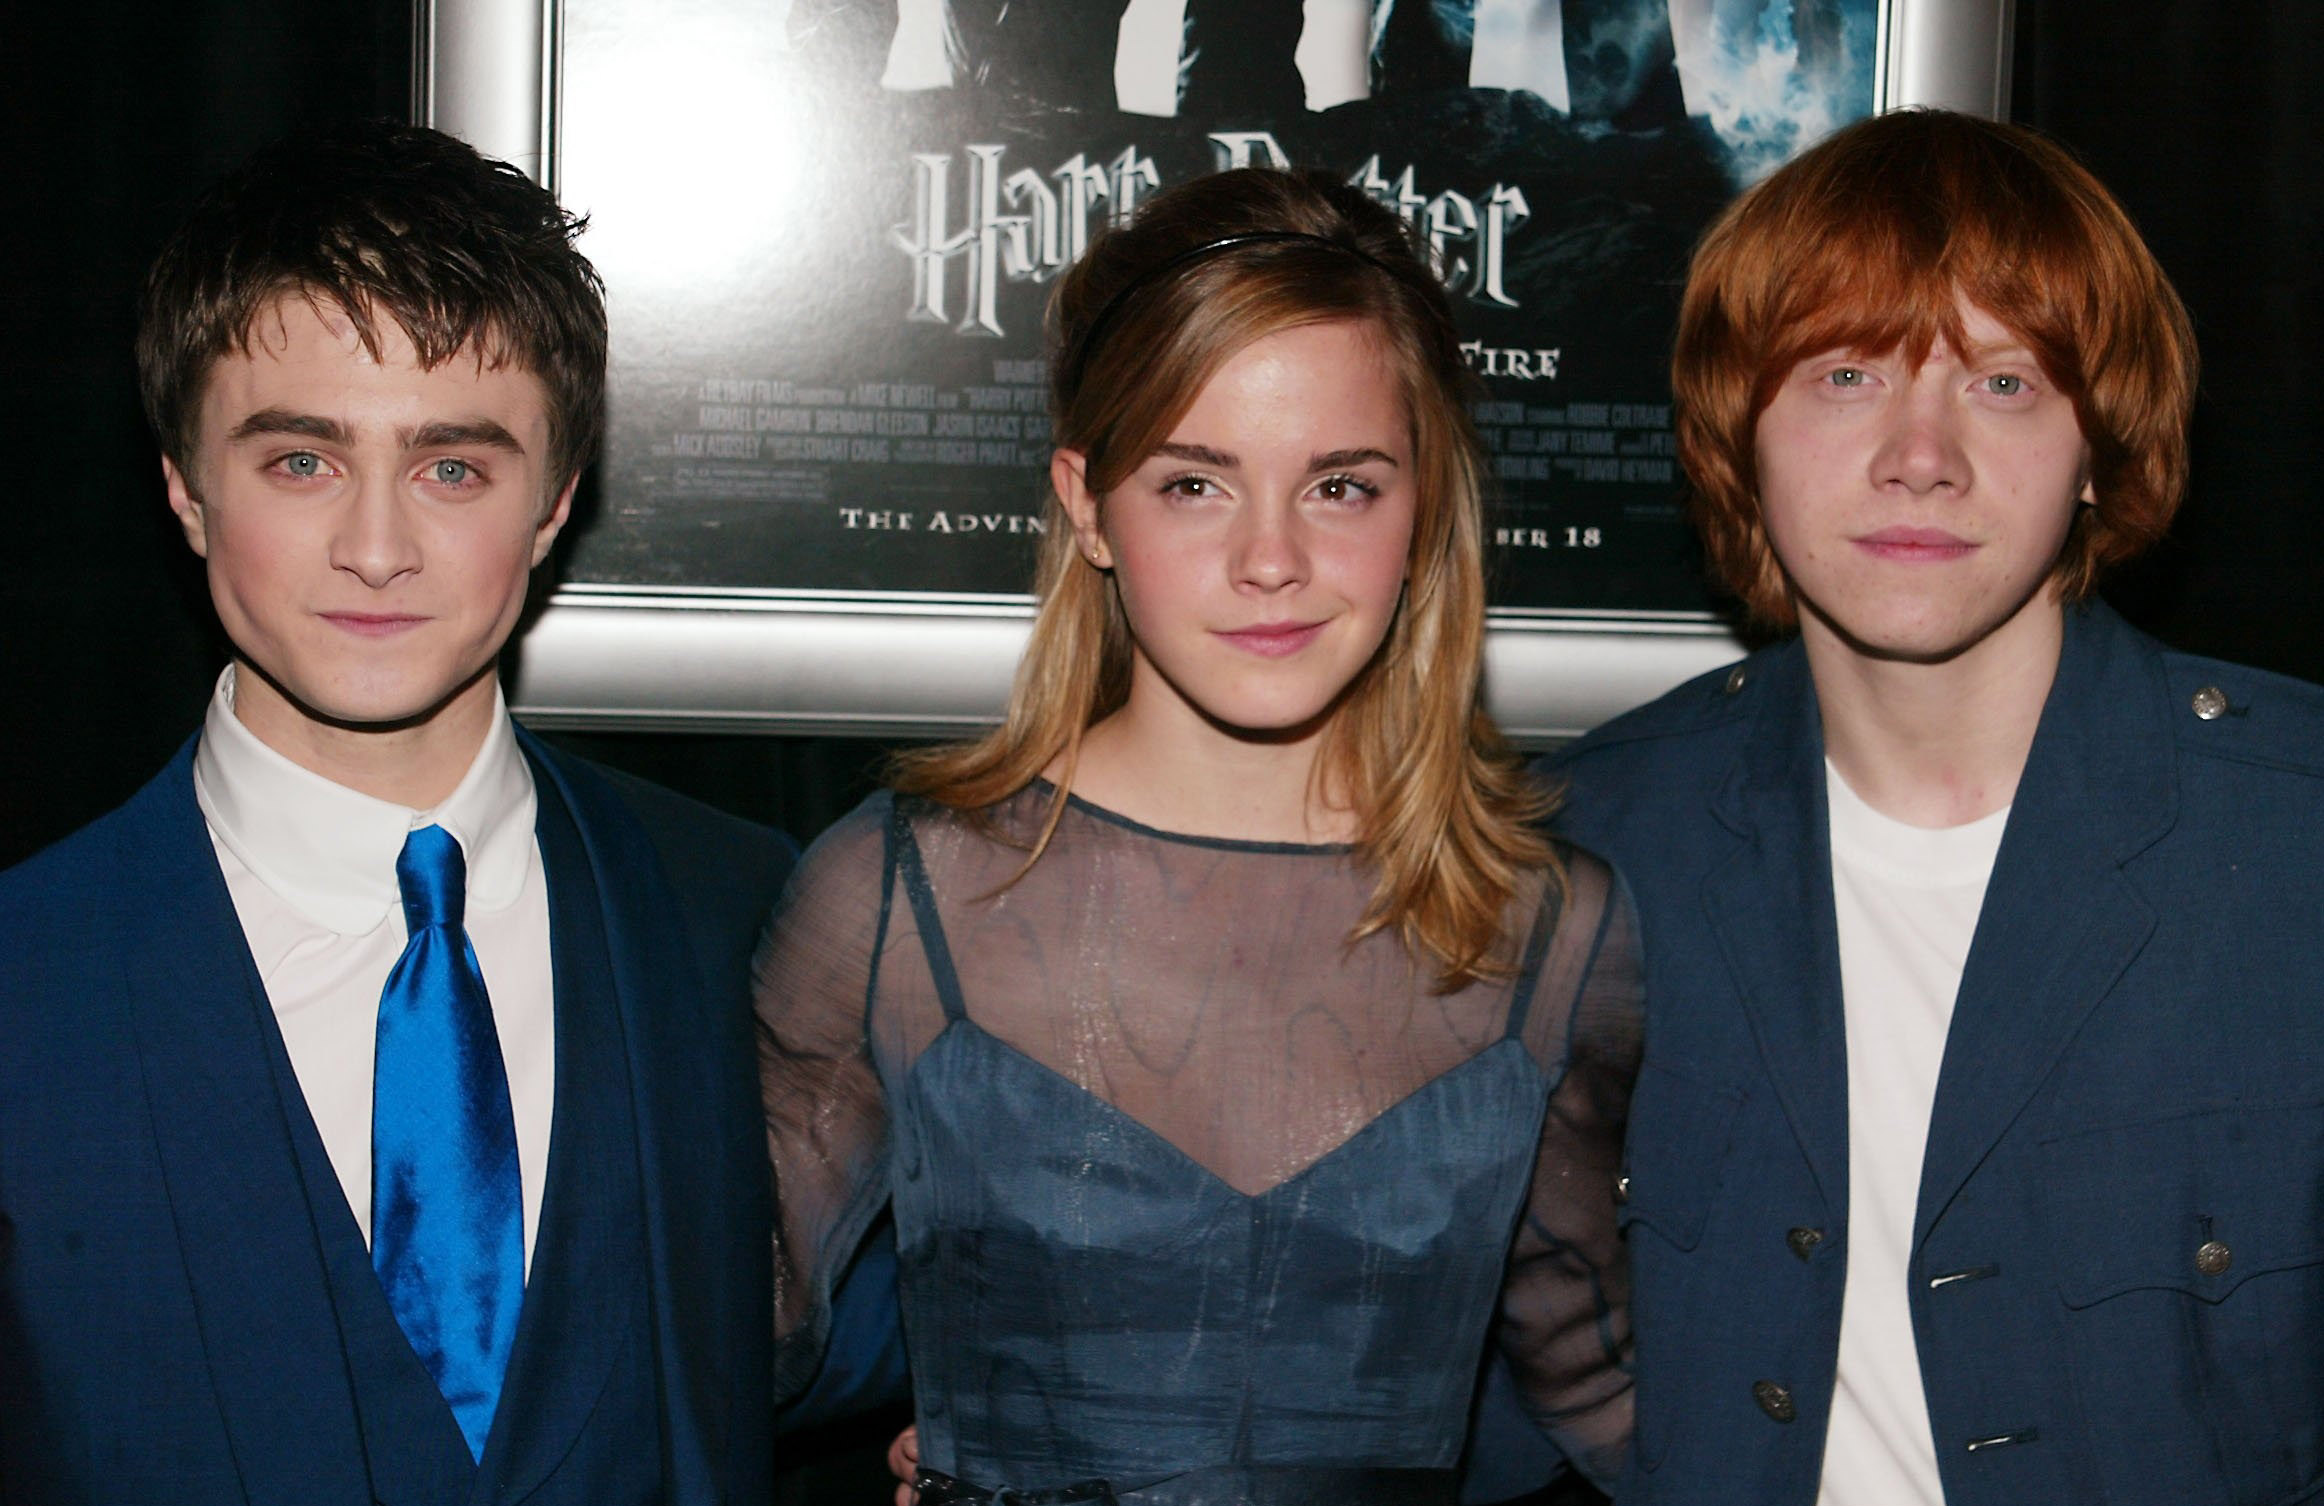 Daniel Radcliffe, Emma Watson et Rupert Grint à la première de "Harry Potter et la coupe de feu" à New York le 12 novembre 2005 | Source : Getty Images